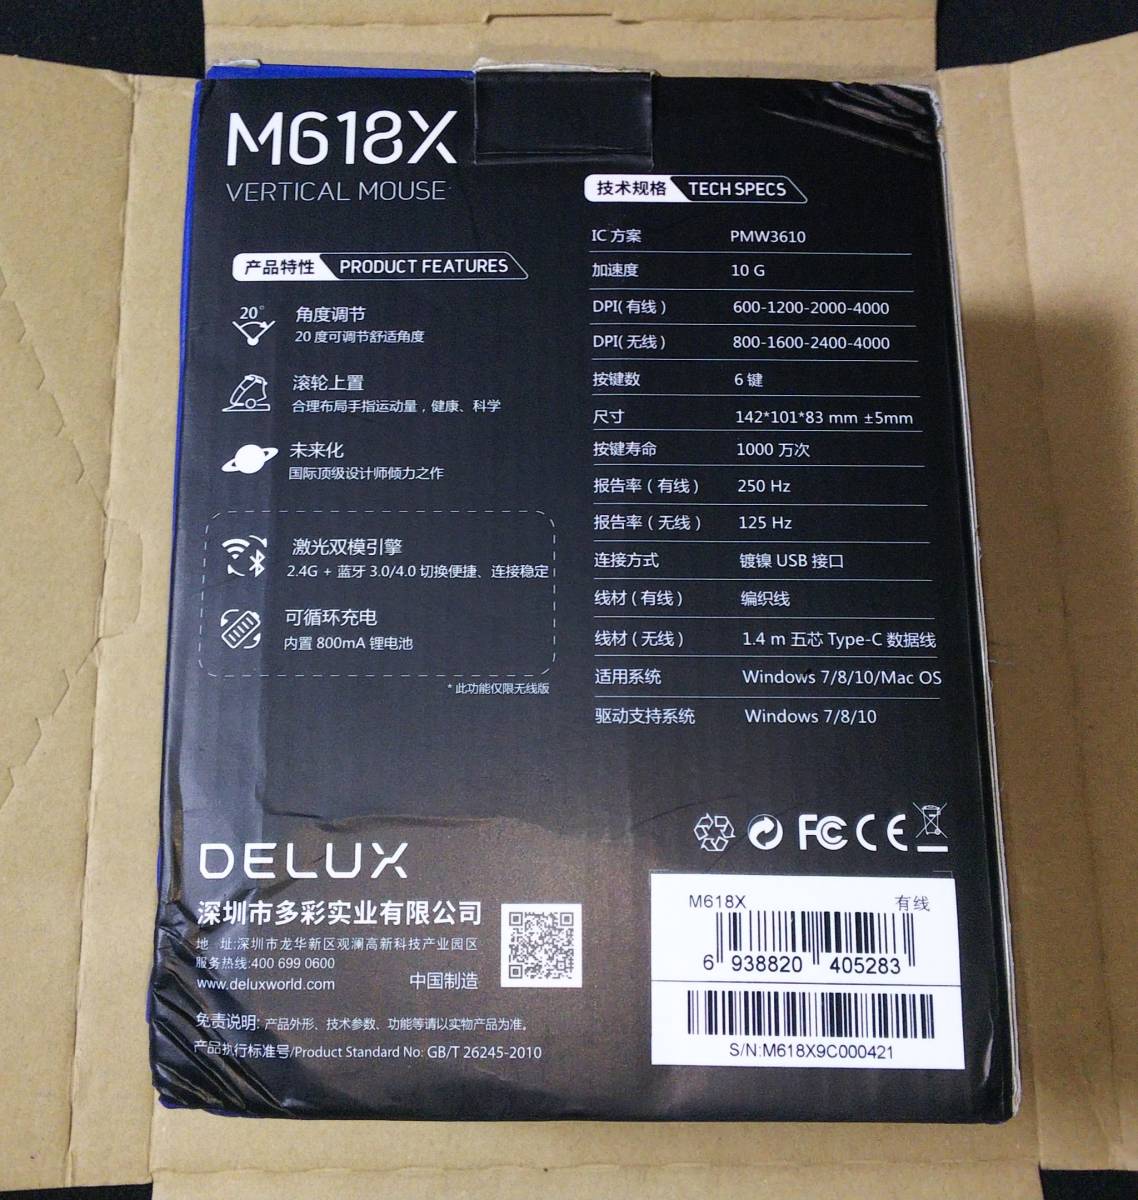 ★送料無料★【新品】DELUX M618X 光学USB式有線垂直マウス RGBライト 機能ボタン6個 高性能 光学センサー ゲーミングマウス